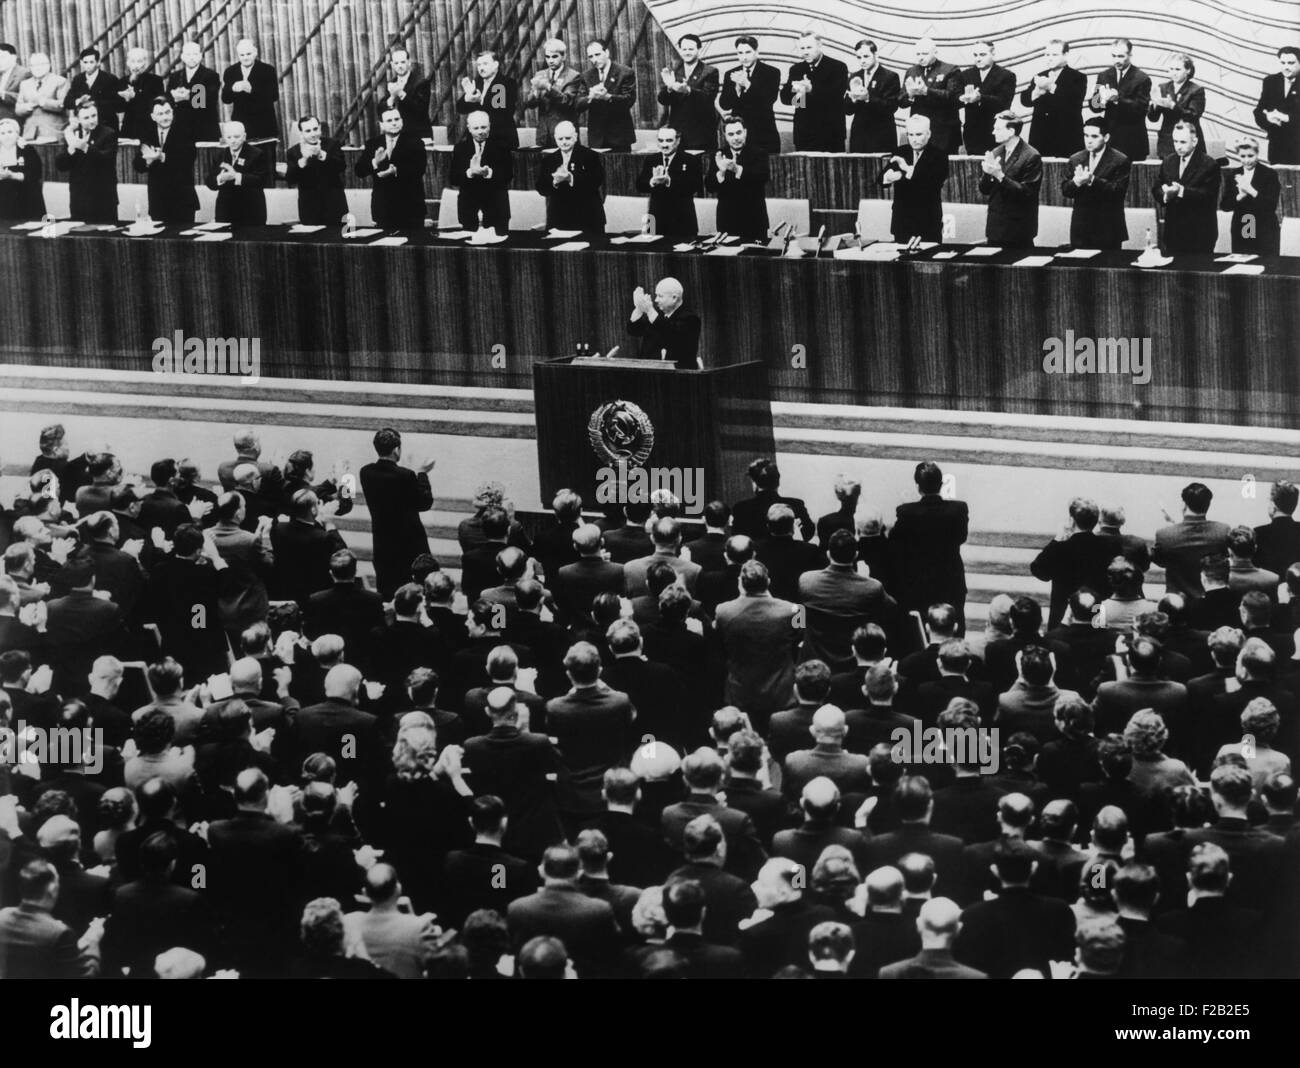 22. kommunistische Partei-Kongreß in Moskau, 17. Oktober 1961. Nikita Khrushchev führt den Applaus vom Podium bei Eröffnung der Sitzung. Hinter ihm sind die Mitglieder des Präsidiums des Kongresses. Das Präsidium von 1952 bis 1966, fungierte als zentrale Politikgestaltung und Organ der kommunistischen Partei der Sowjetunion. (CSU 2015 8 554) Stockfoto